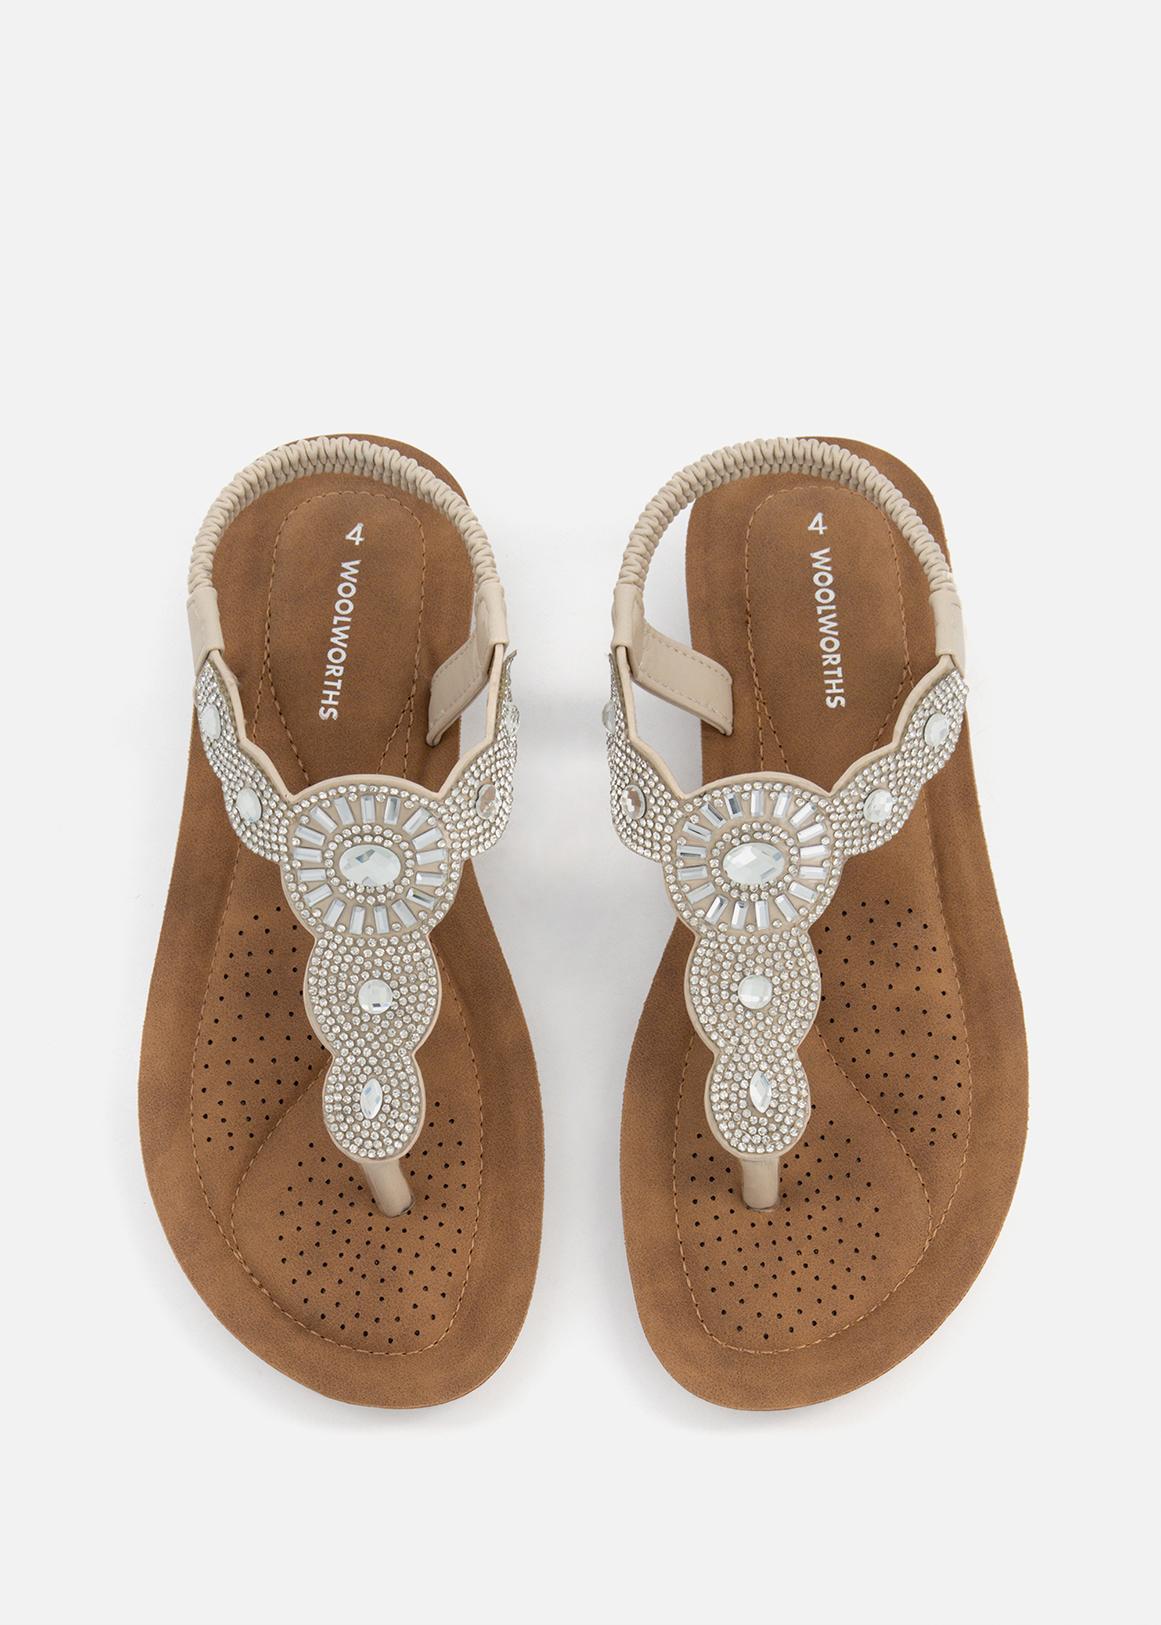 Bead Embellished Comfort Sandals